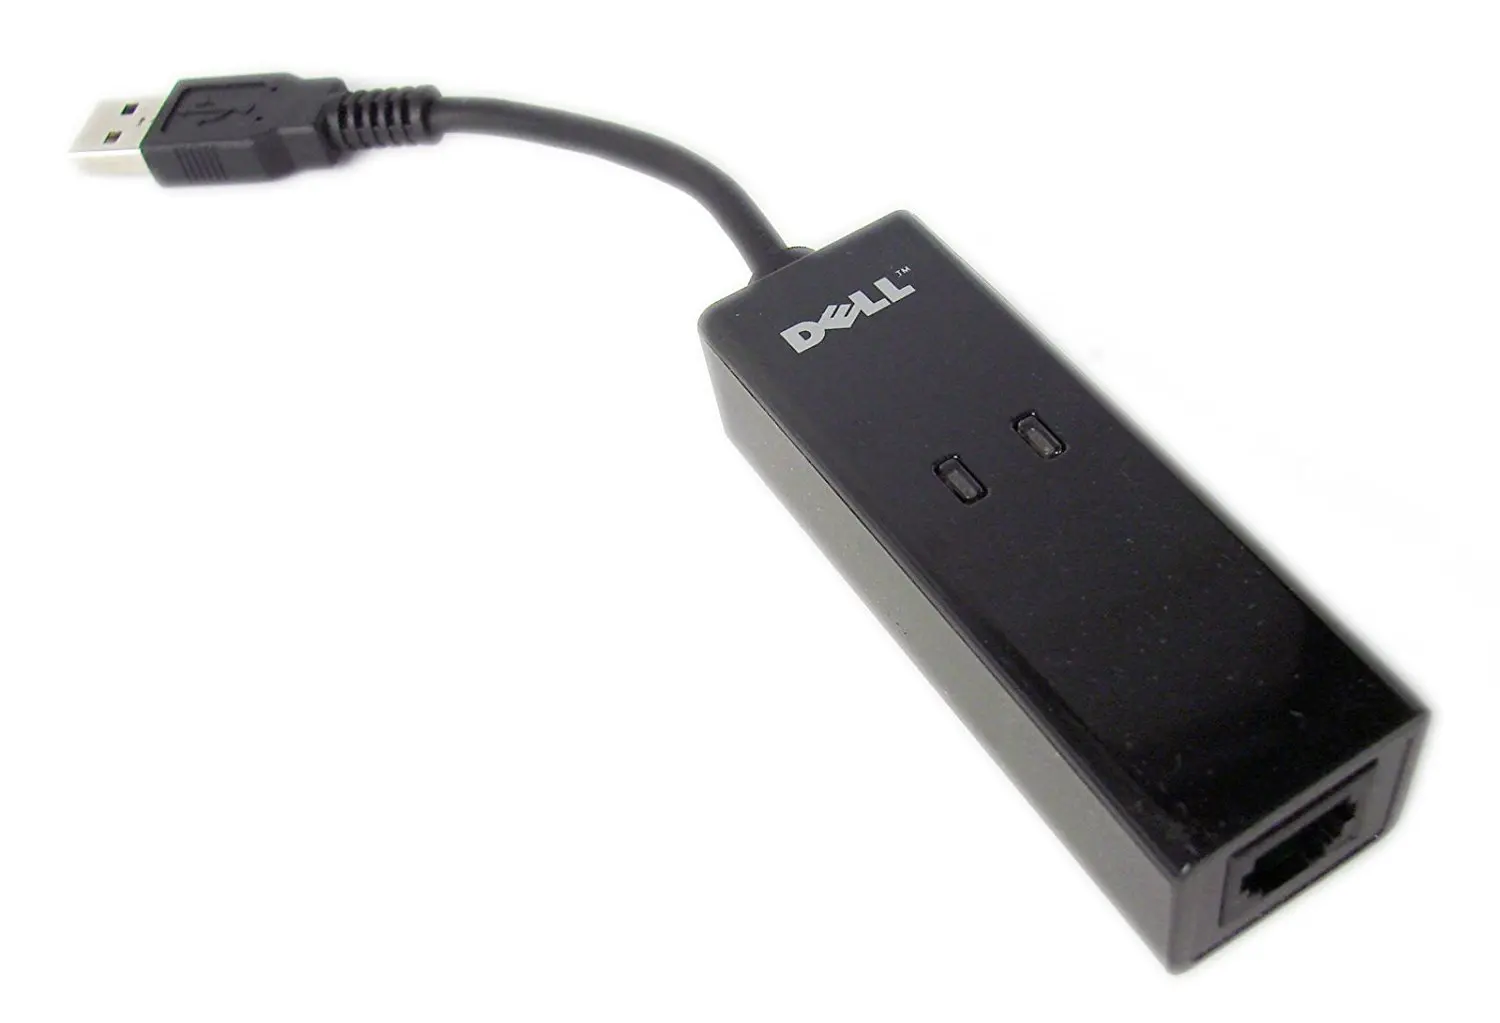 conexant usb modem driver 3095